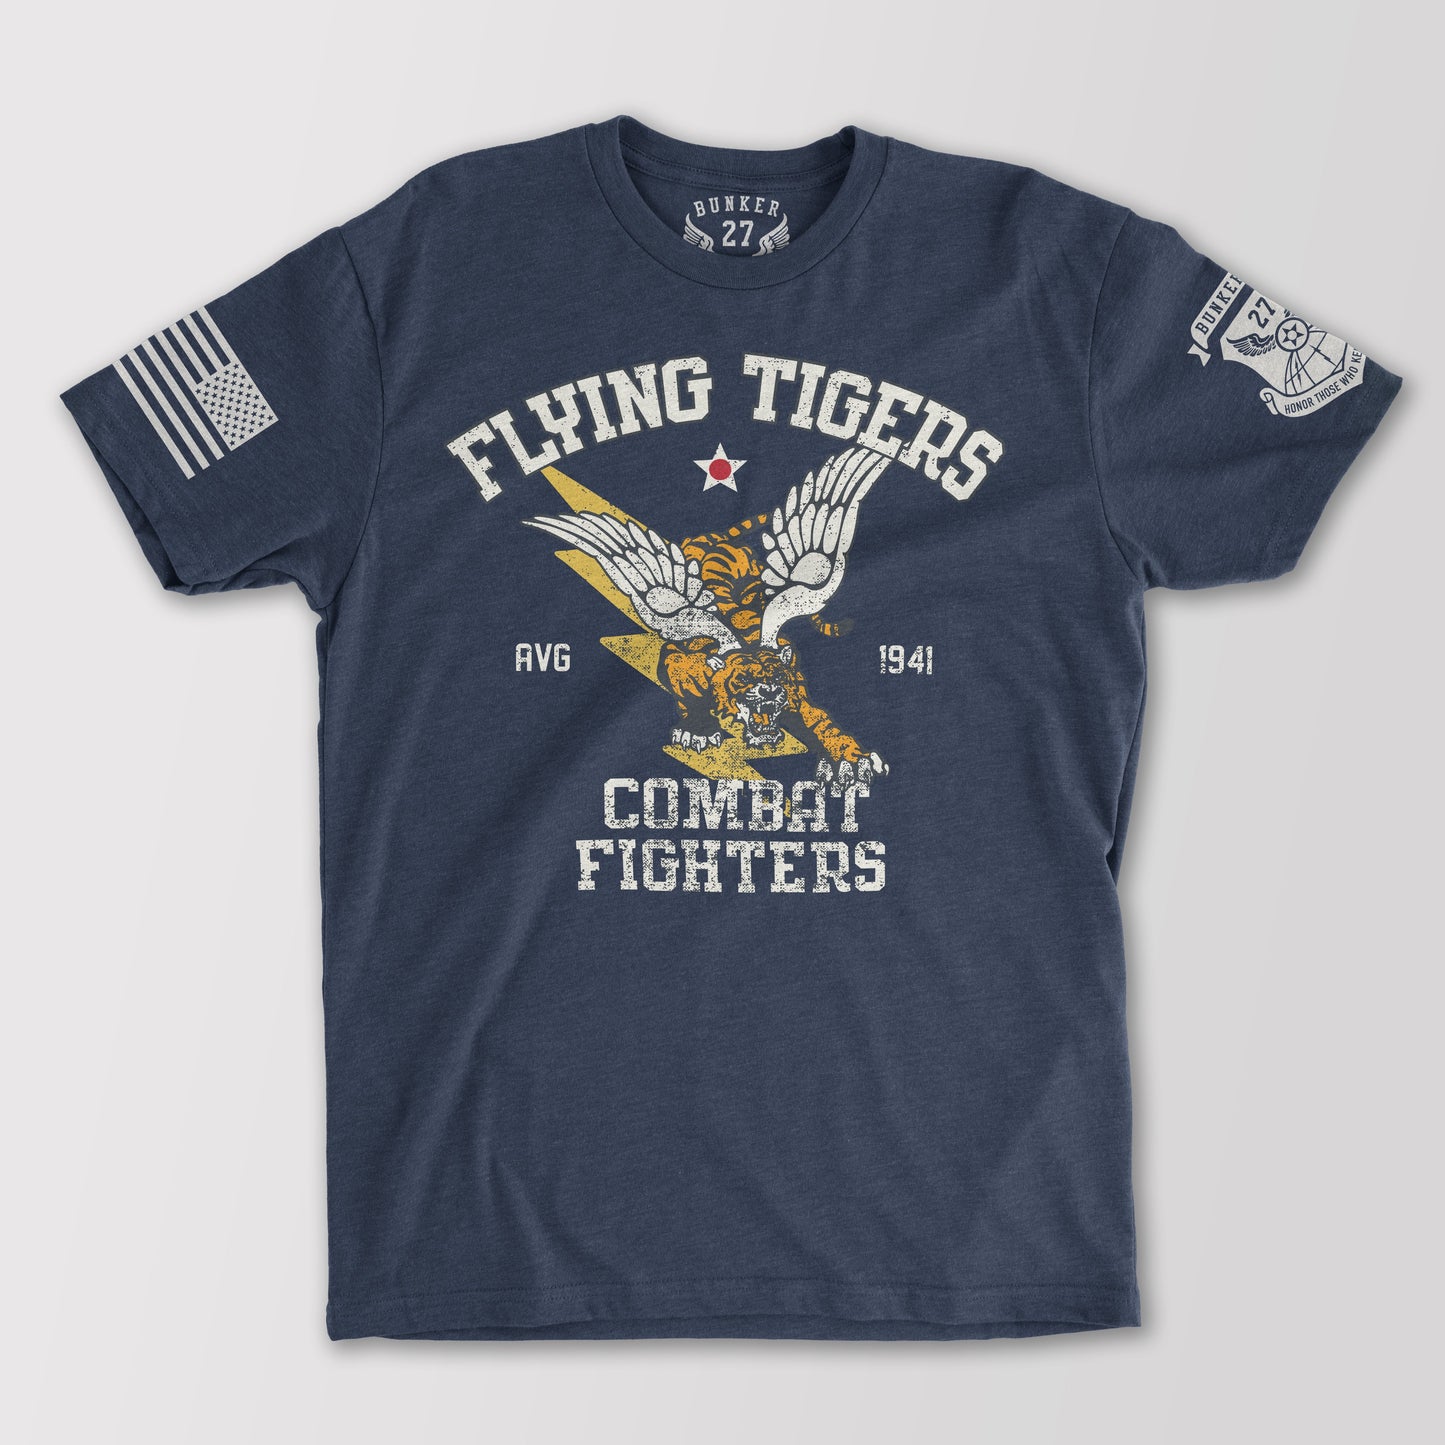 Flying Tigers AVG 1941, Bunker 27